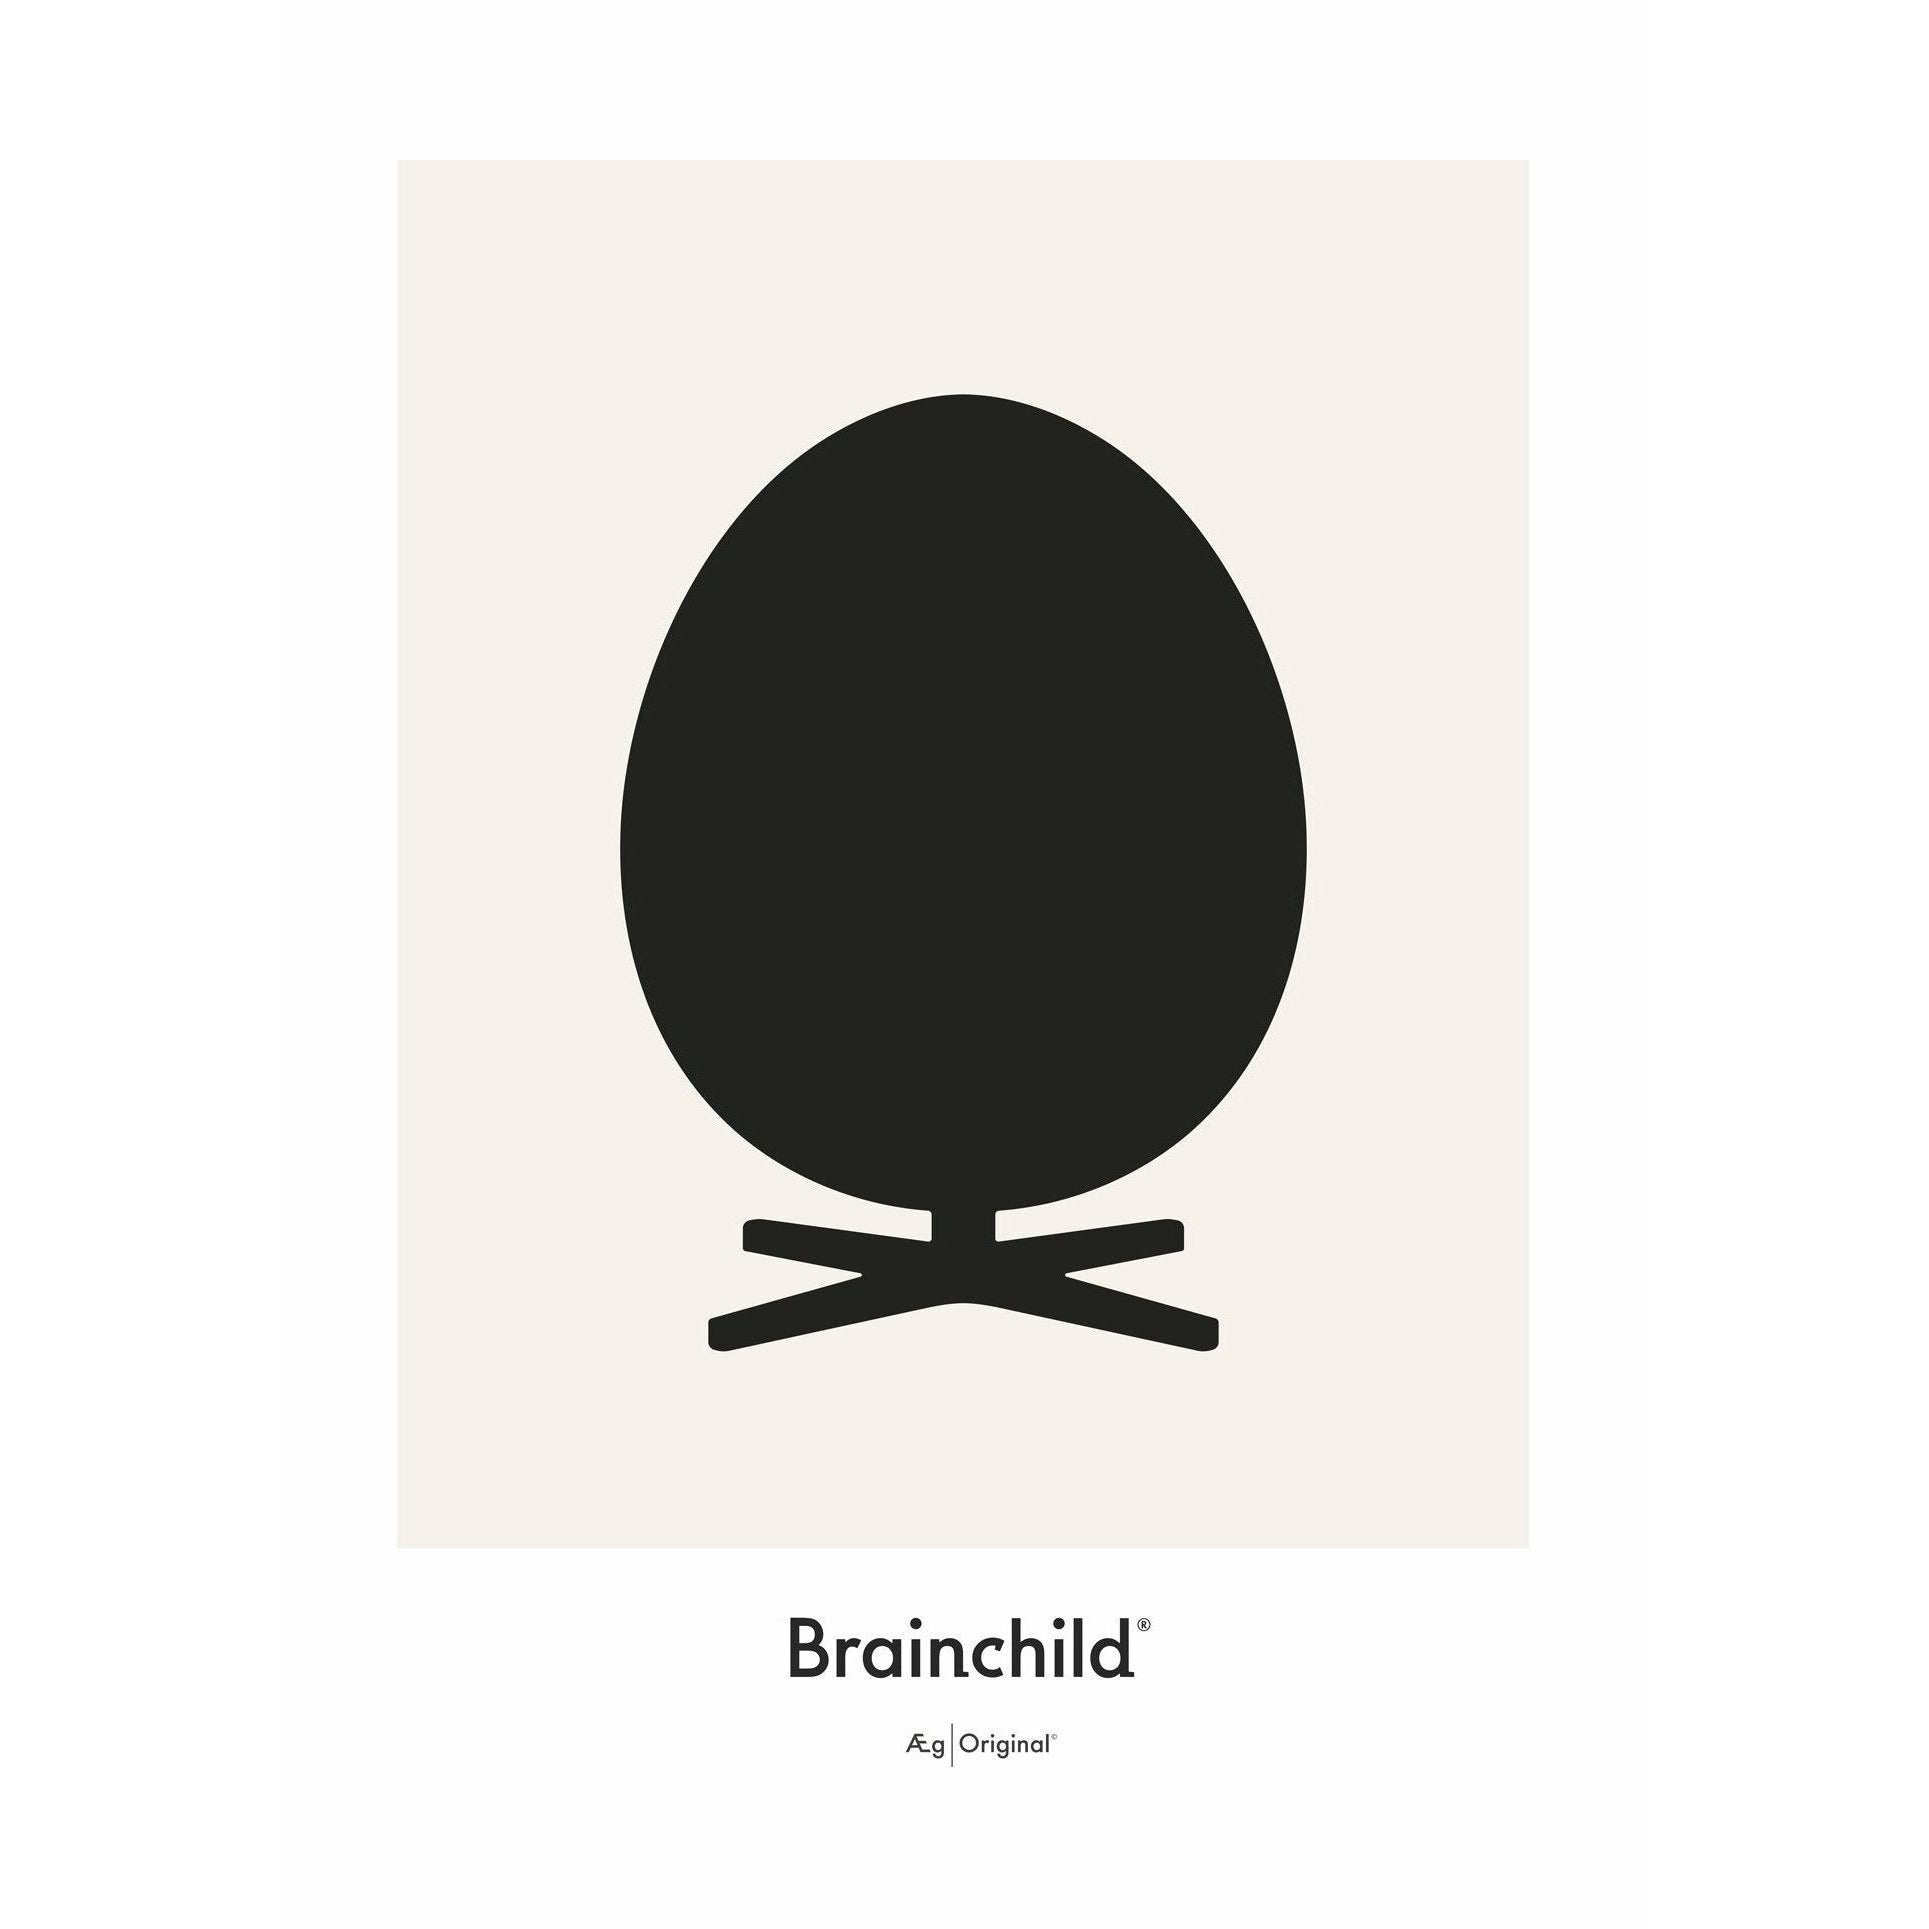 创意鸡蛋设计图标海报没有框架70 x100 cm，灰色